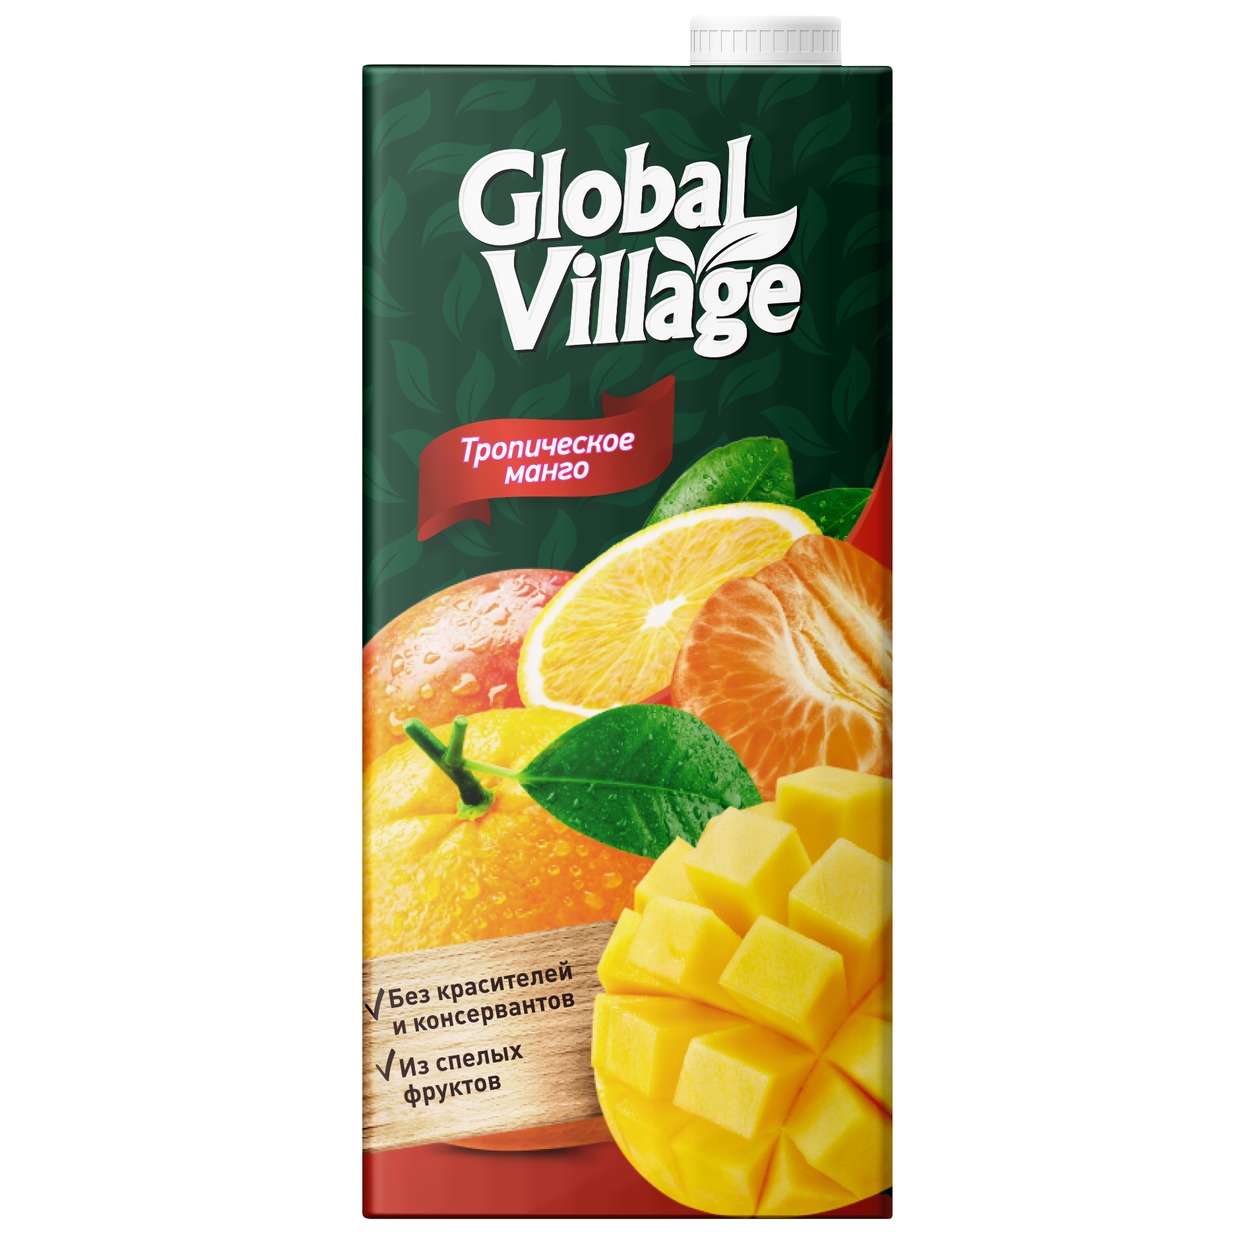 GLOBAL VILLAGE Сокосодержащий напиток из апельсинов, манго и мандаринов, 0,95л по акции в Пятерочке